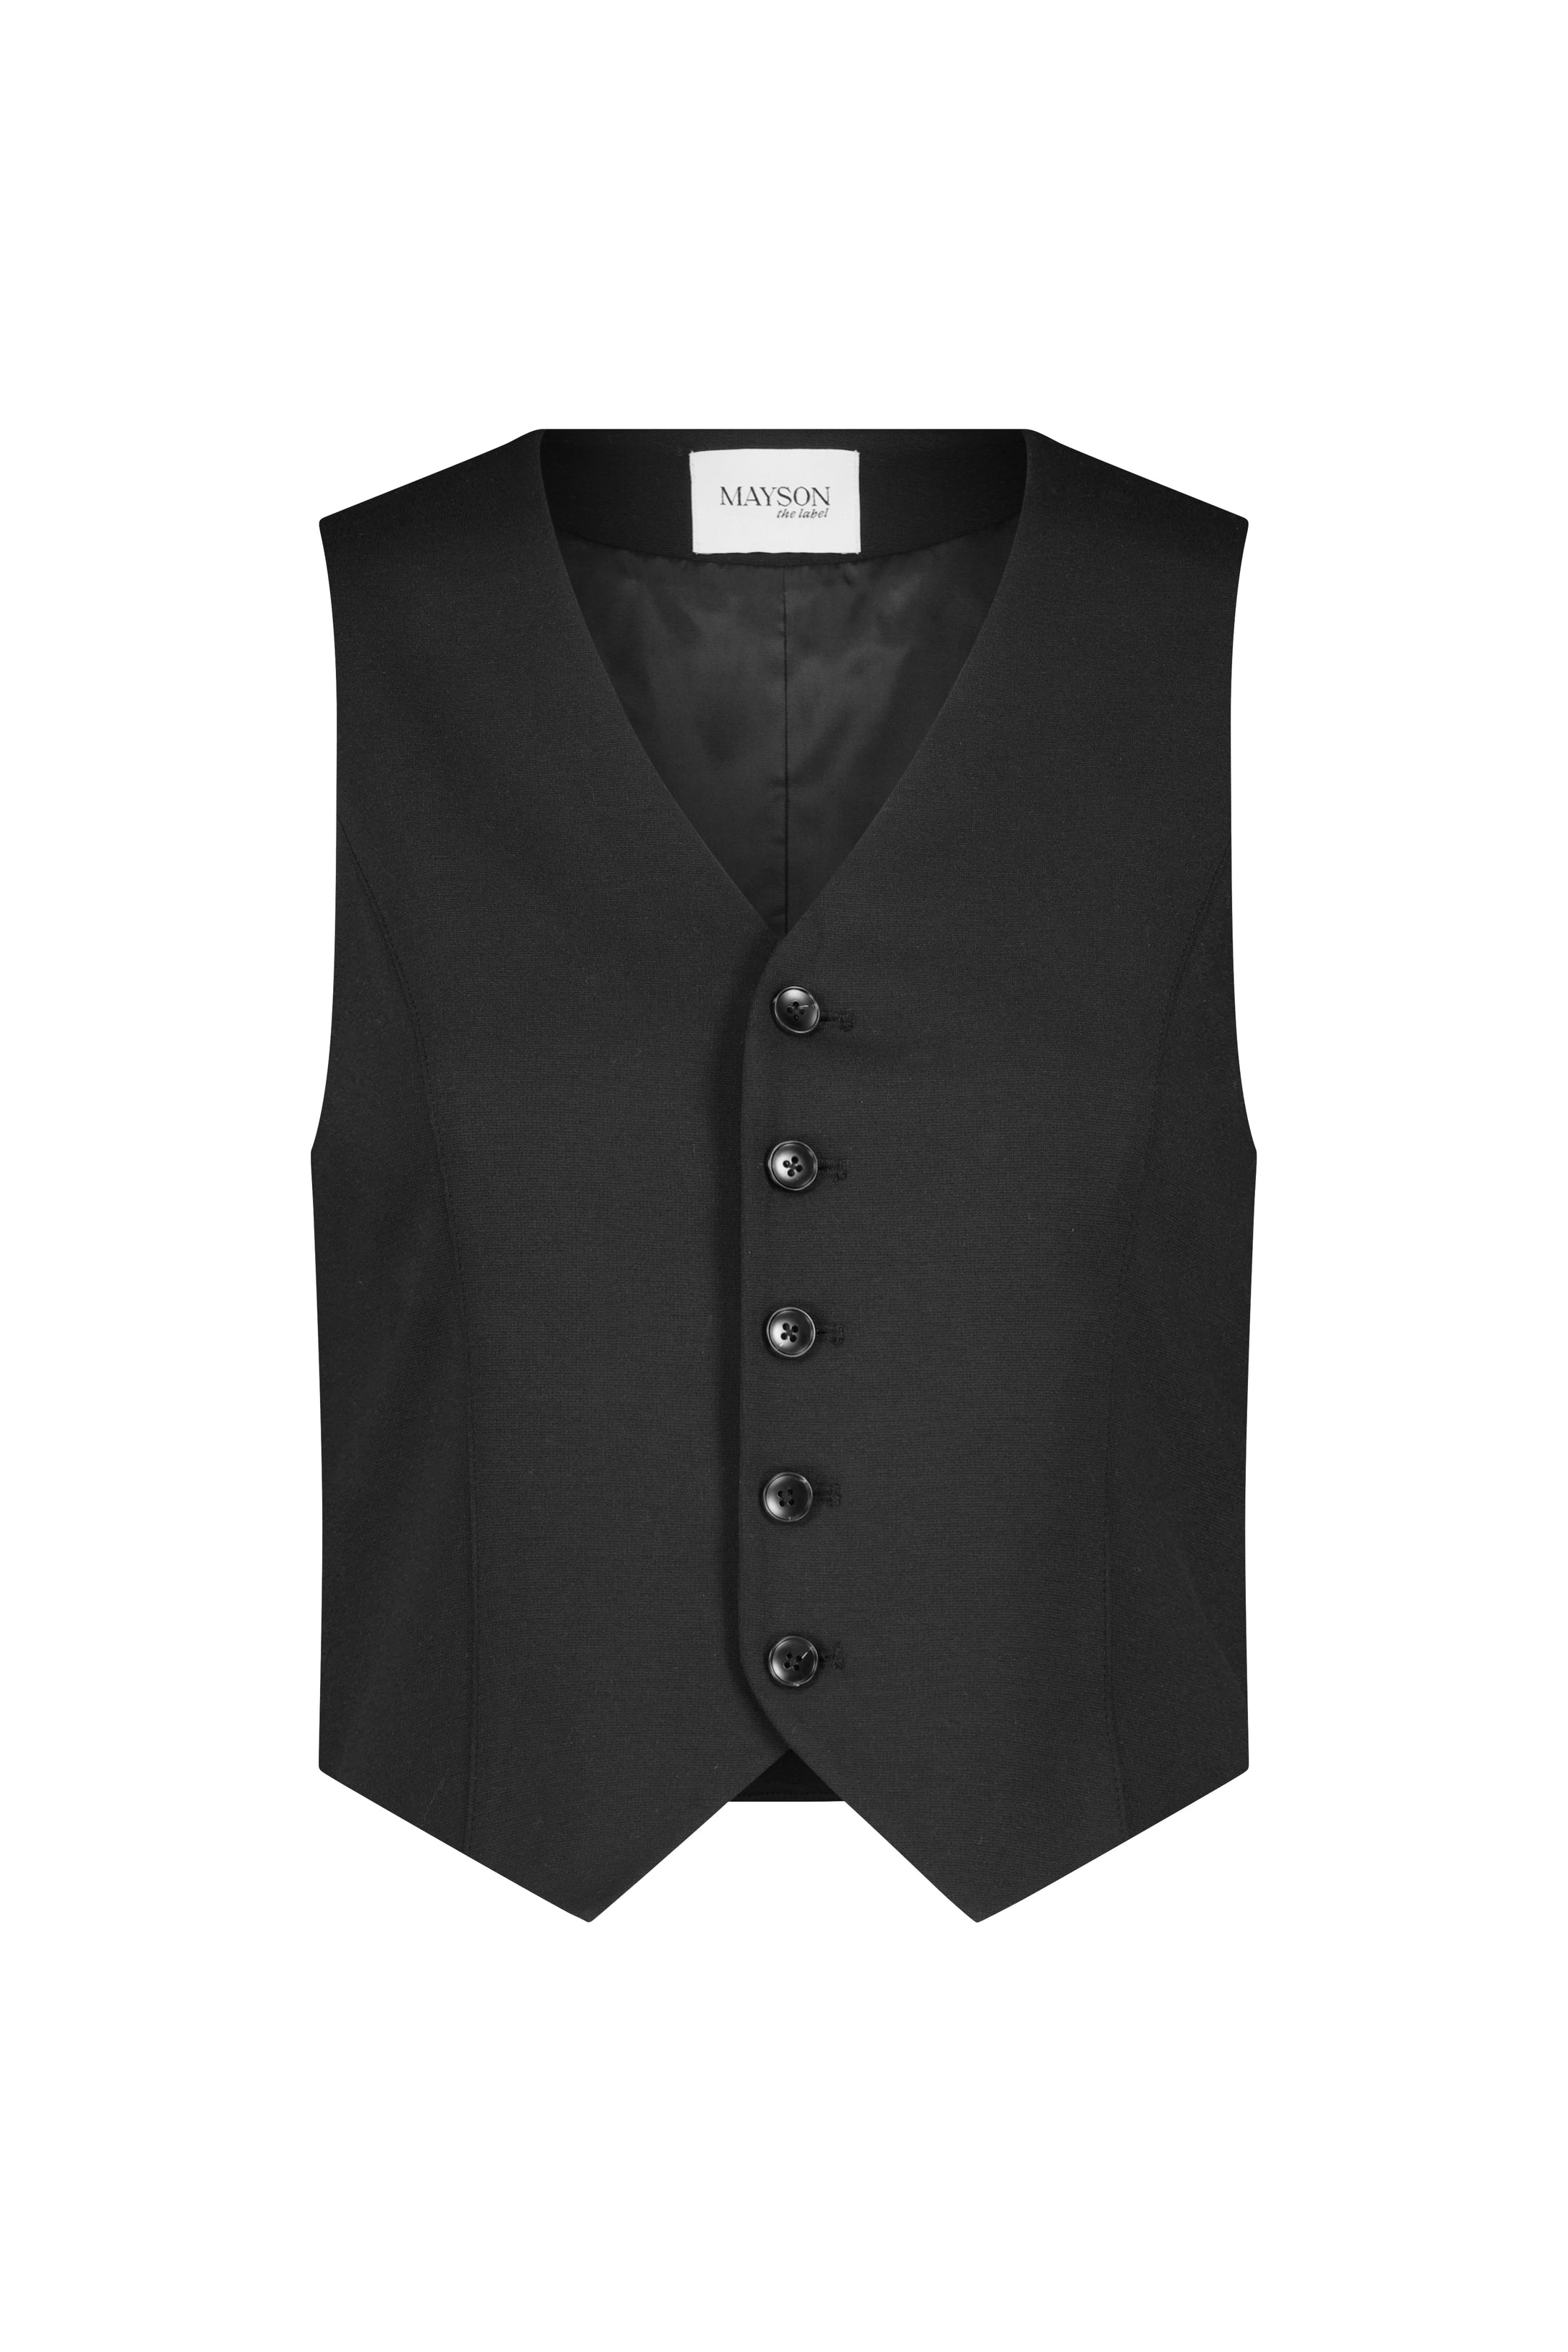 Slim-Fit Button-Front Vest label the MAYSON –